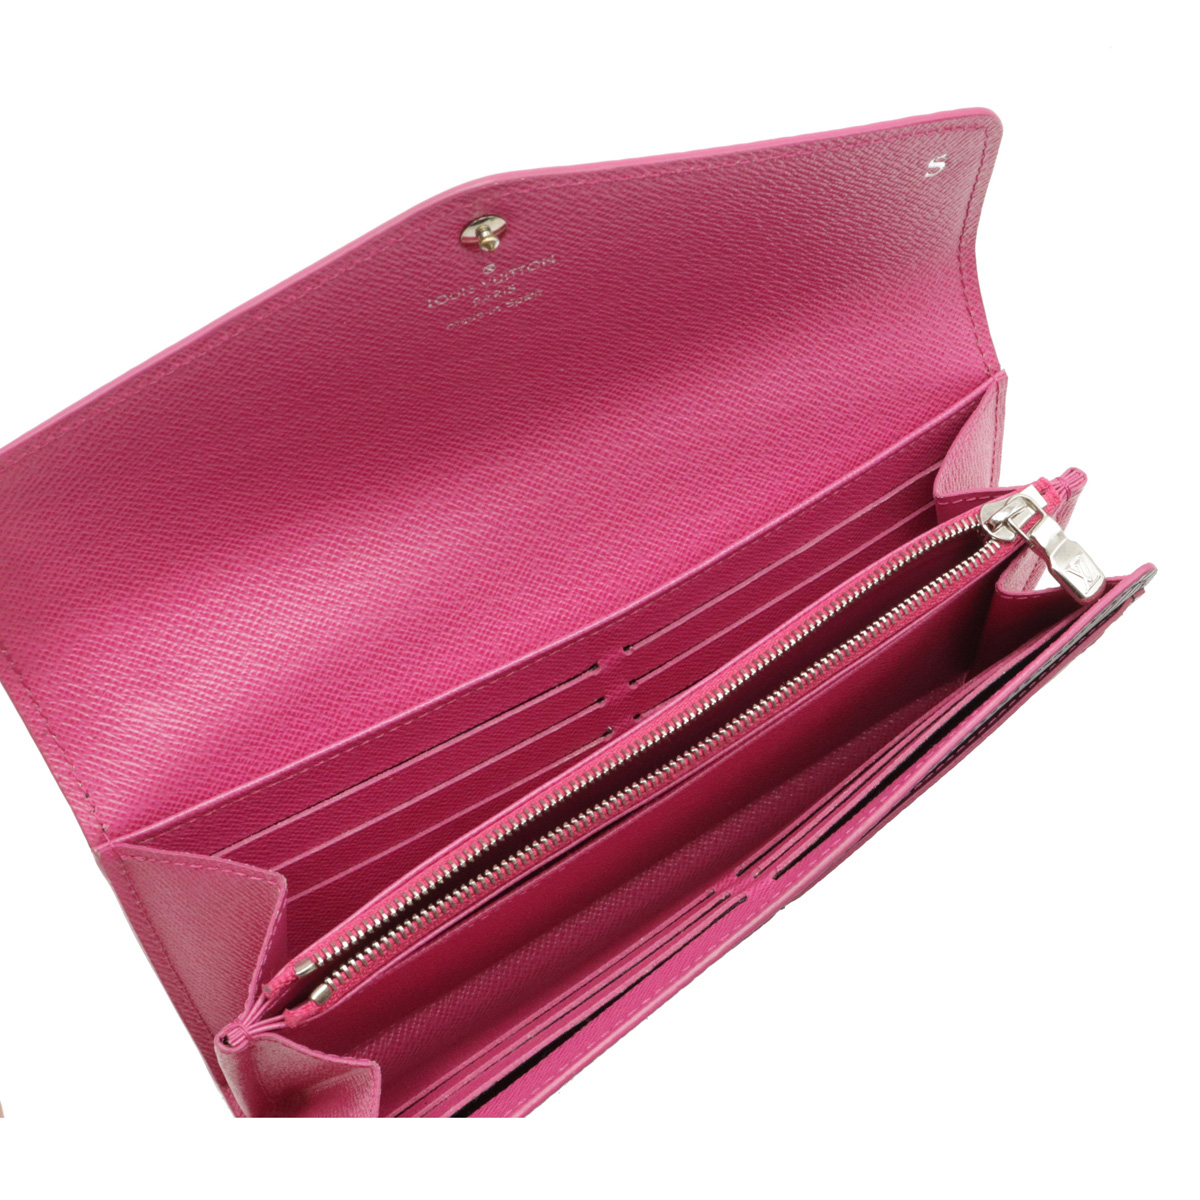 かわいい濃いピンク色❤️ヴィトン エピ ポルトフォイユ・サラ ホット